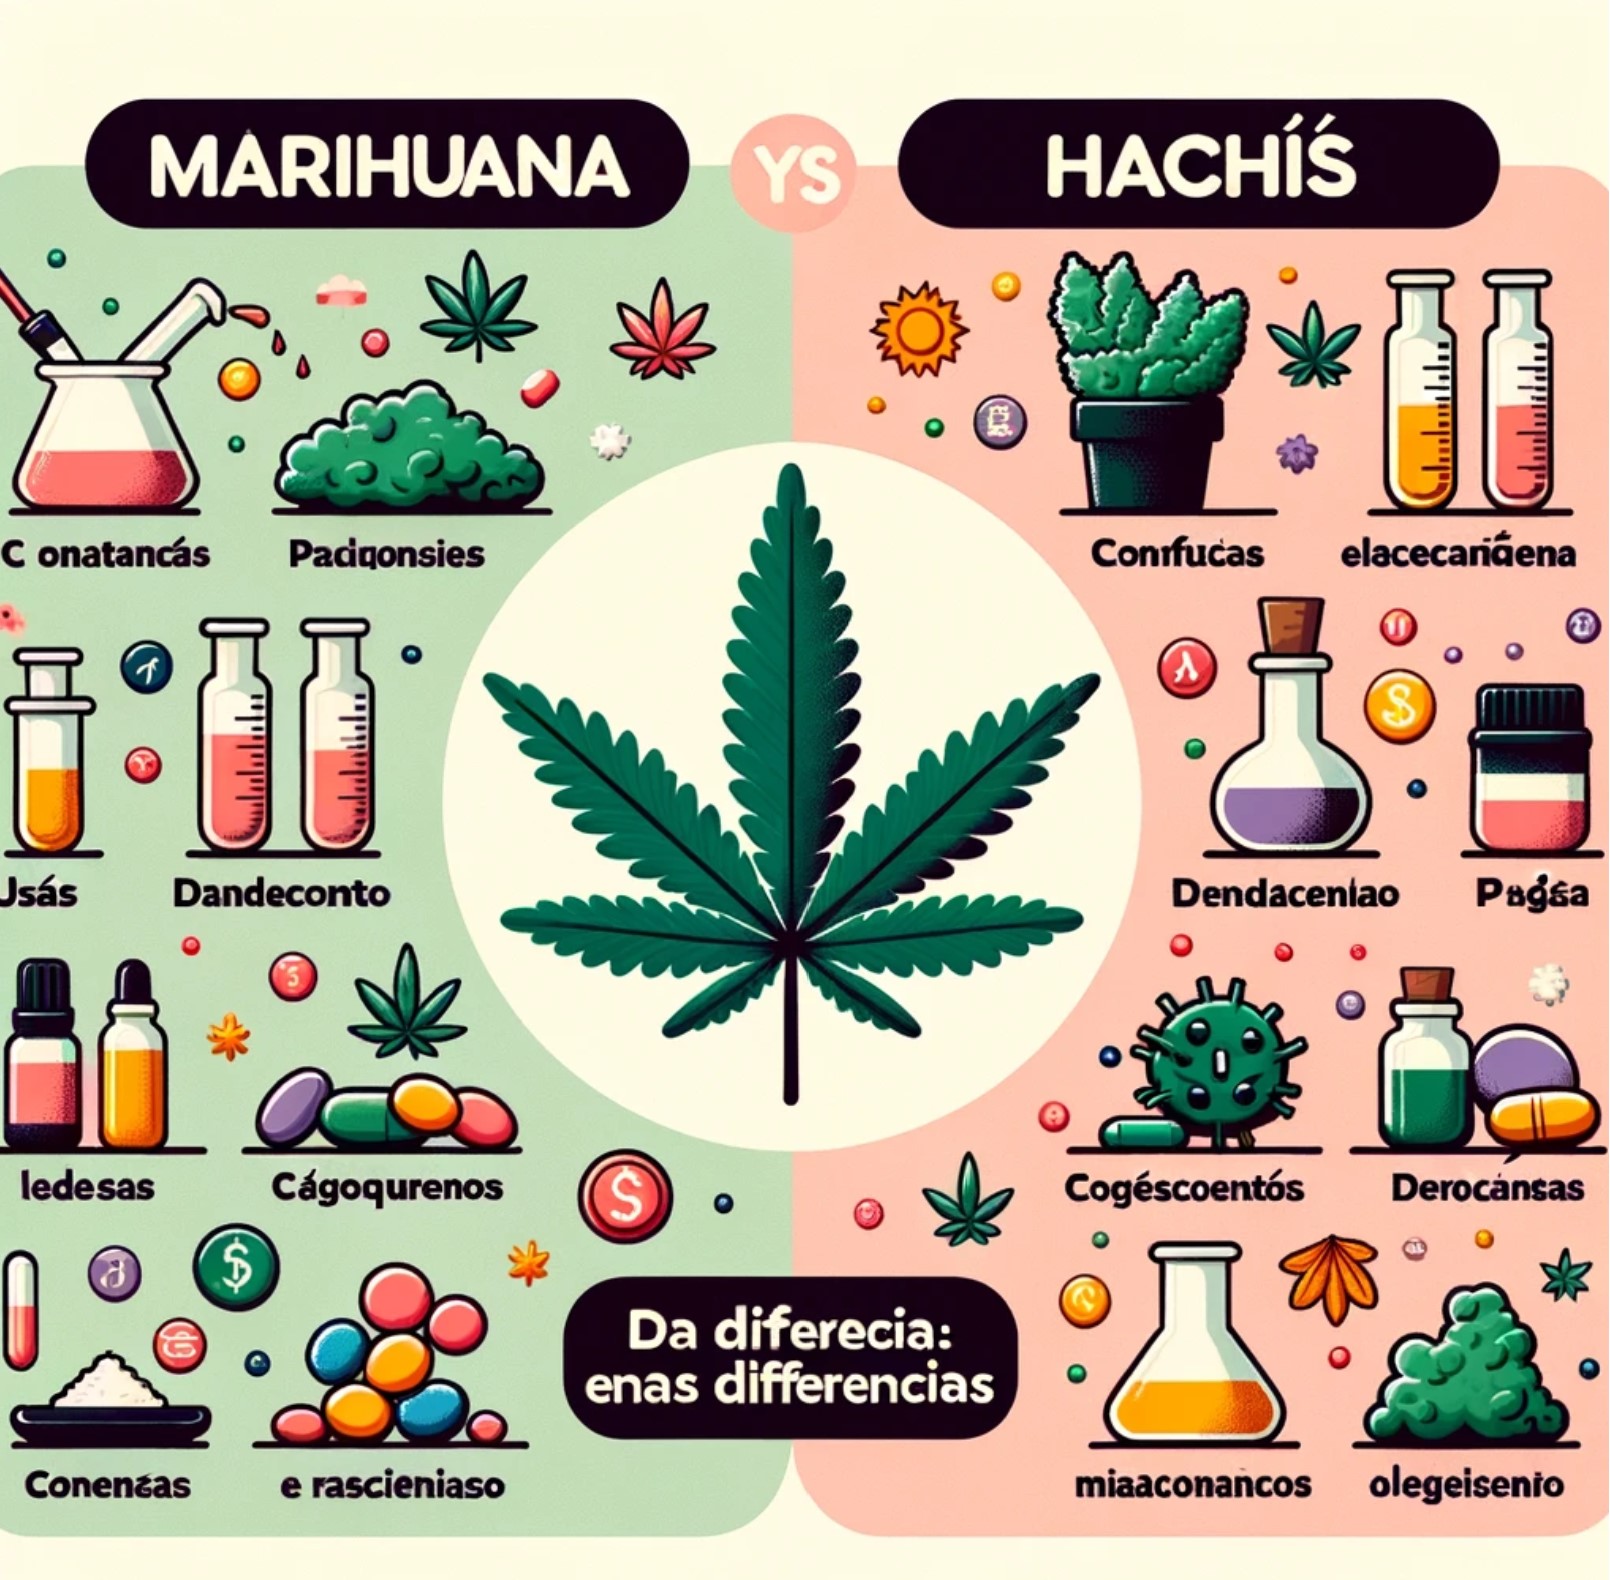 todas las diferencias entre hachis y marihuana en la infografia